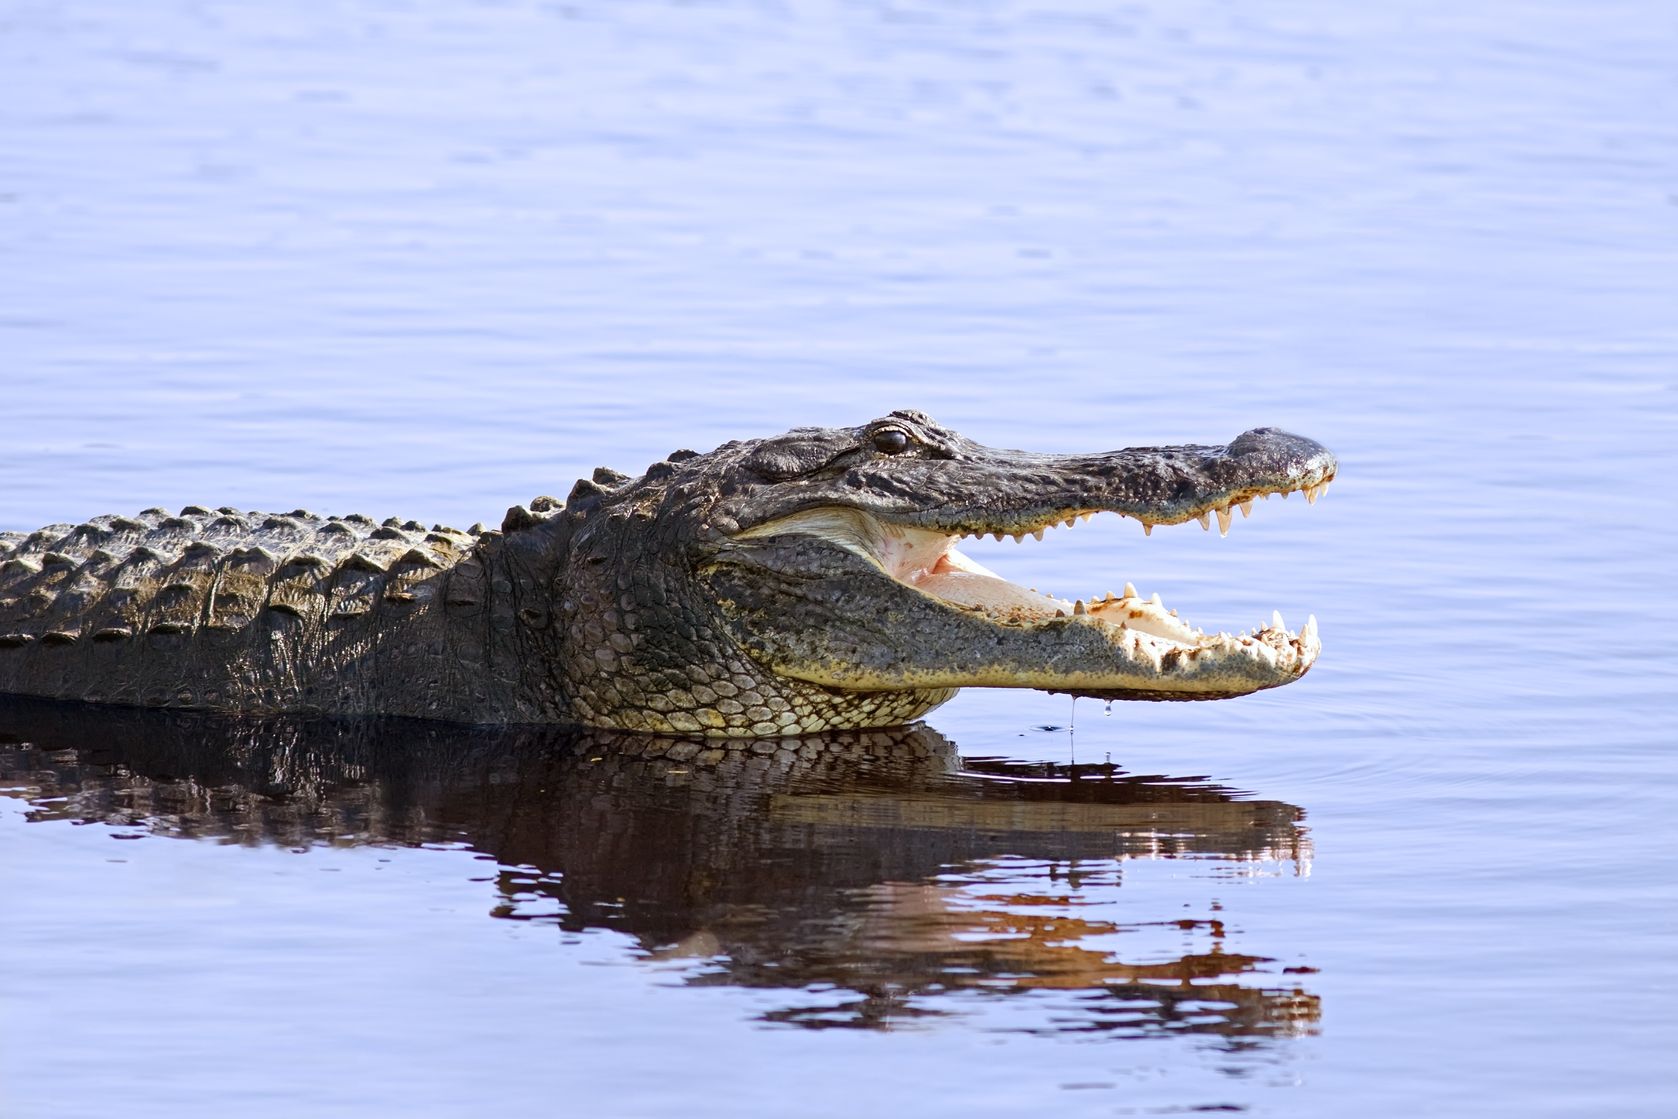 9981528 - an alligator in the wild at myakka lake,sarasota,florida.